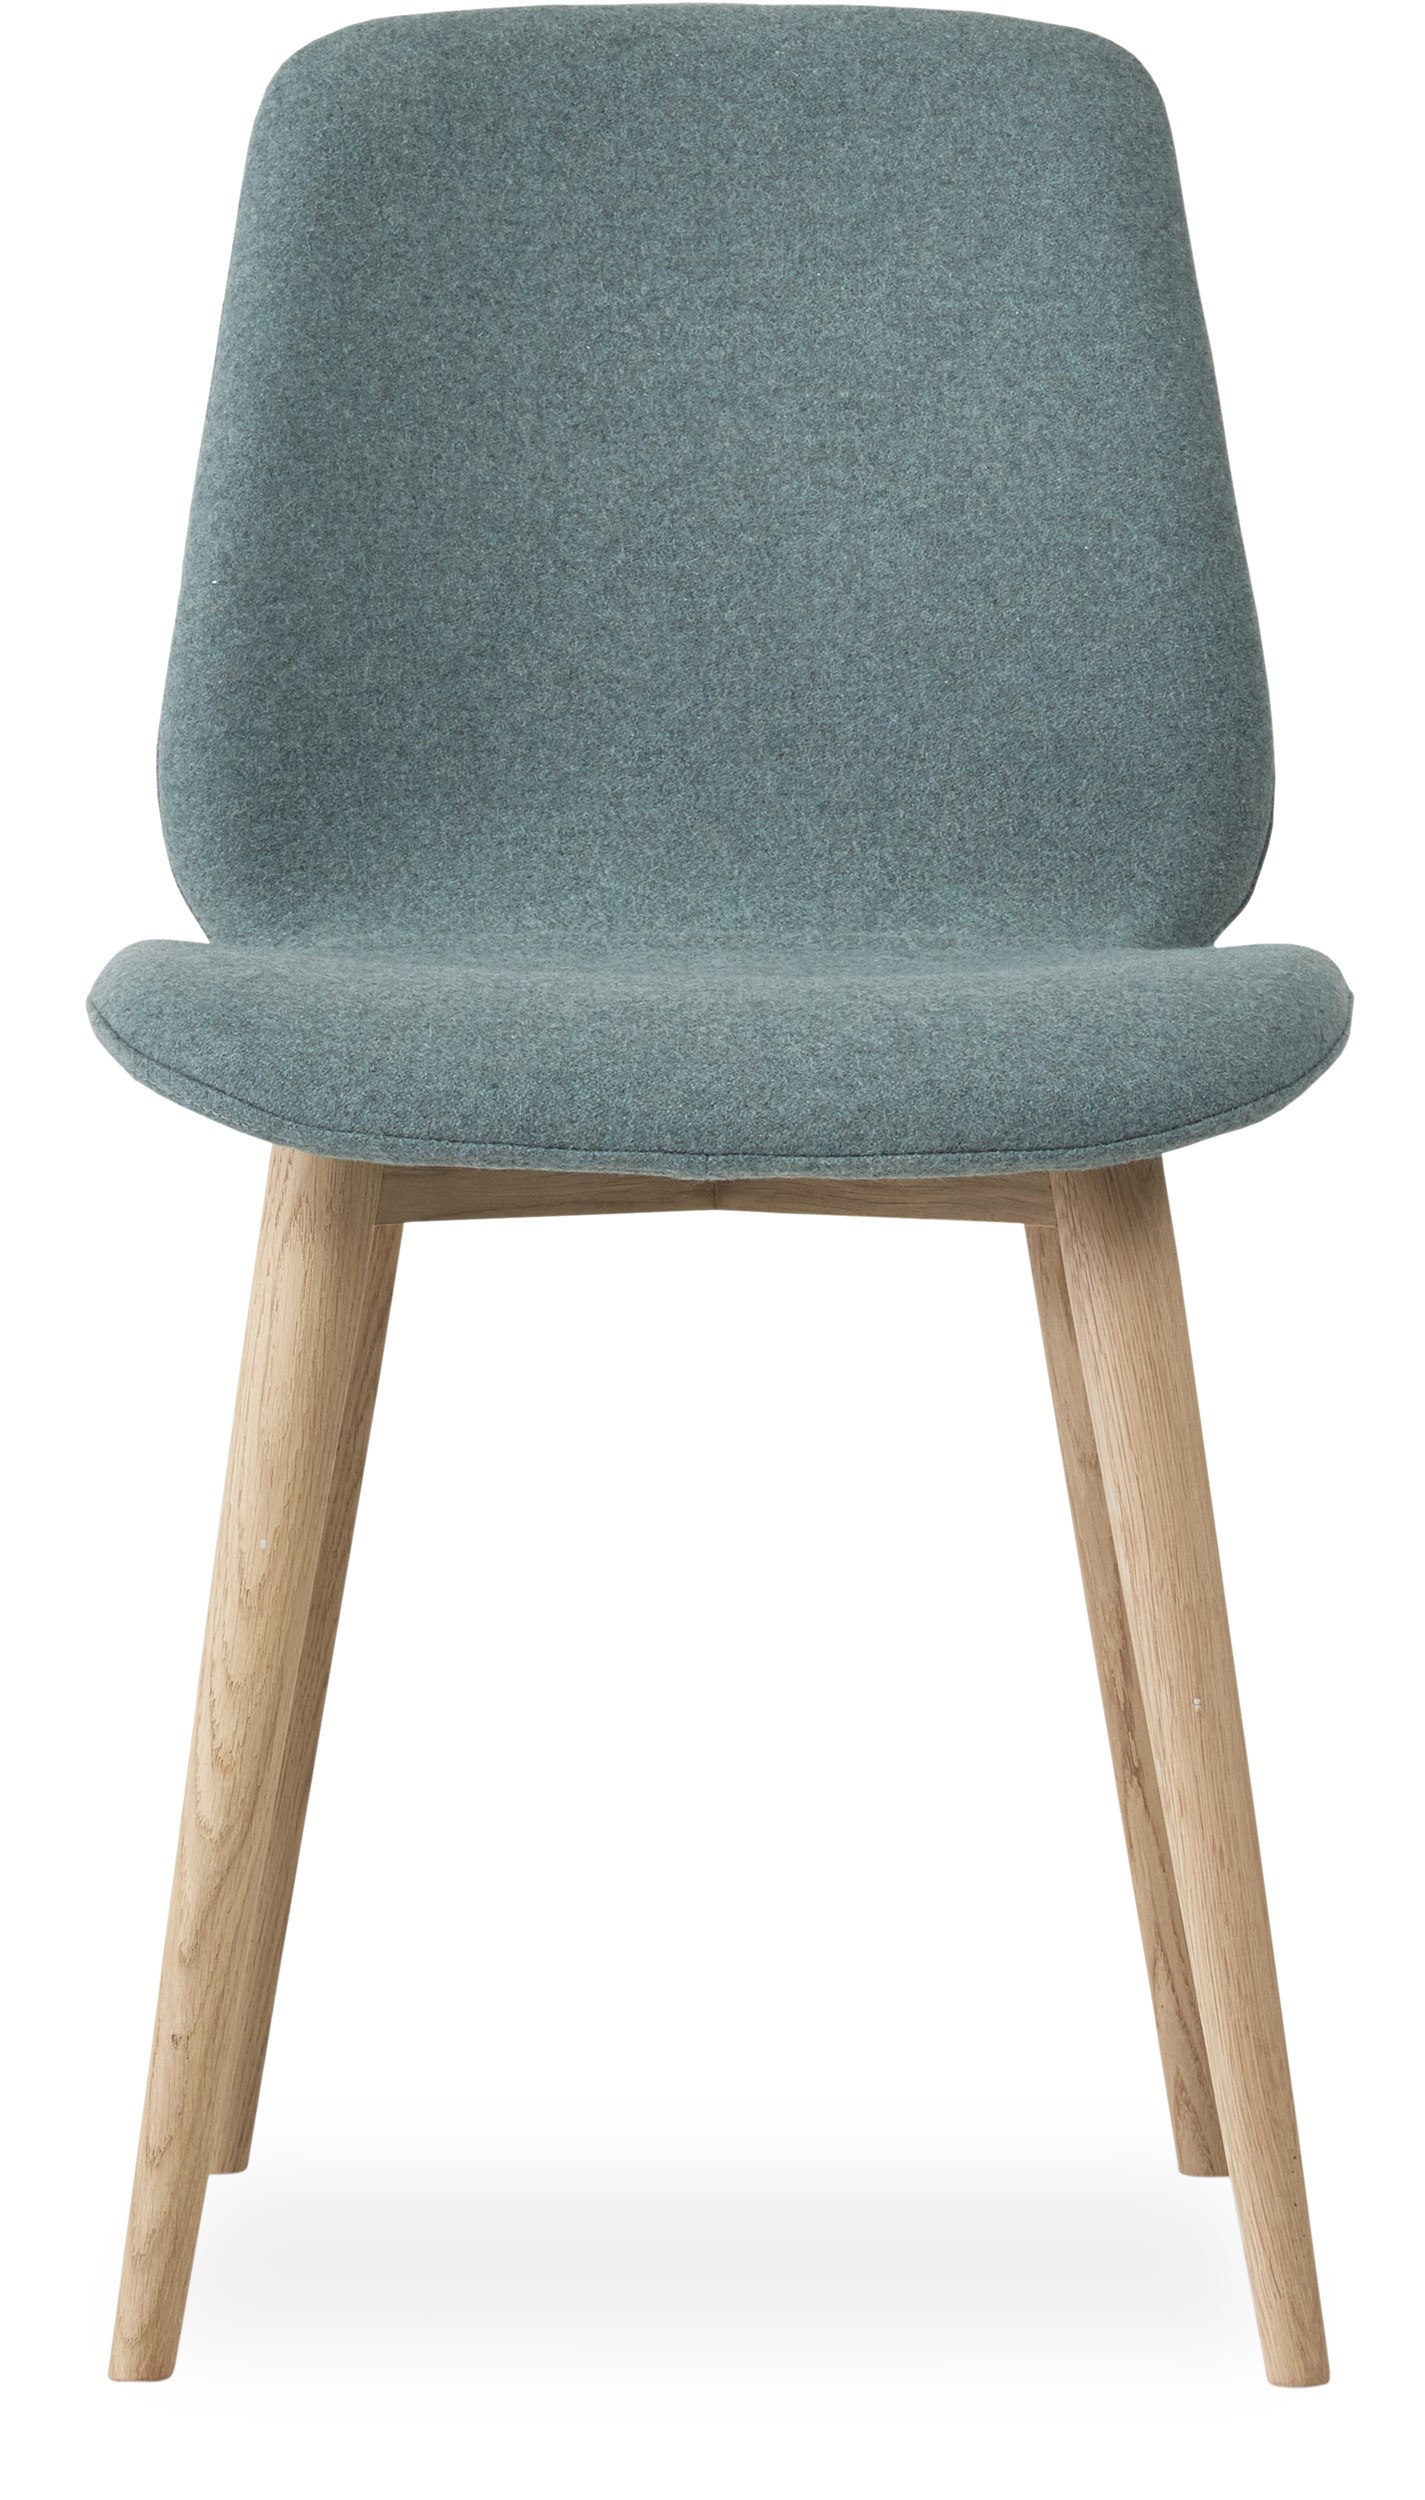 Share matstol - Sits i 22 Dusty green filt och curveben i vitpigmenterad mattlackad ek